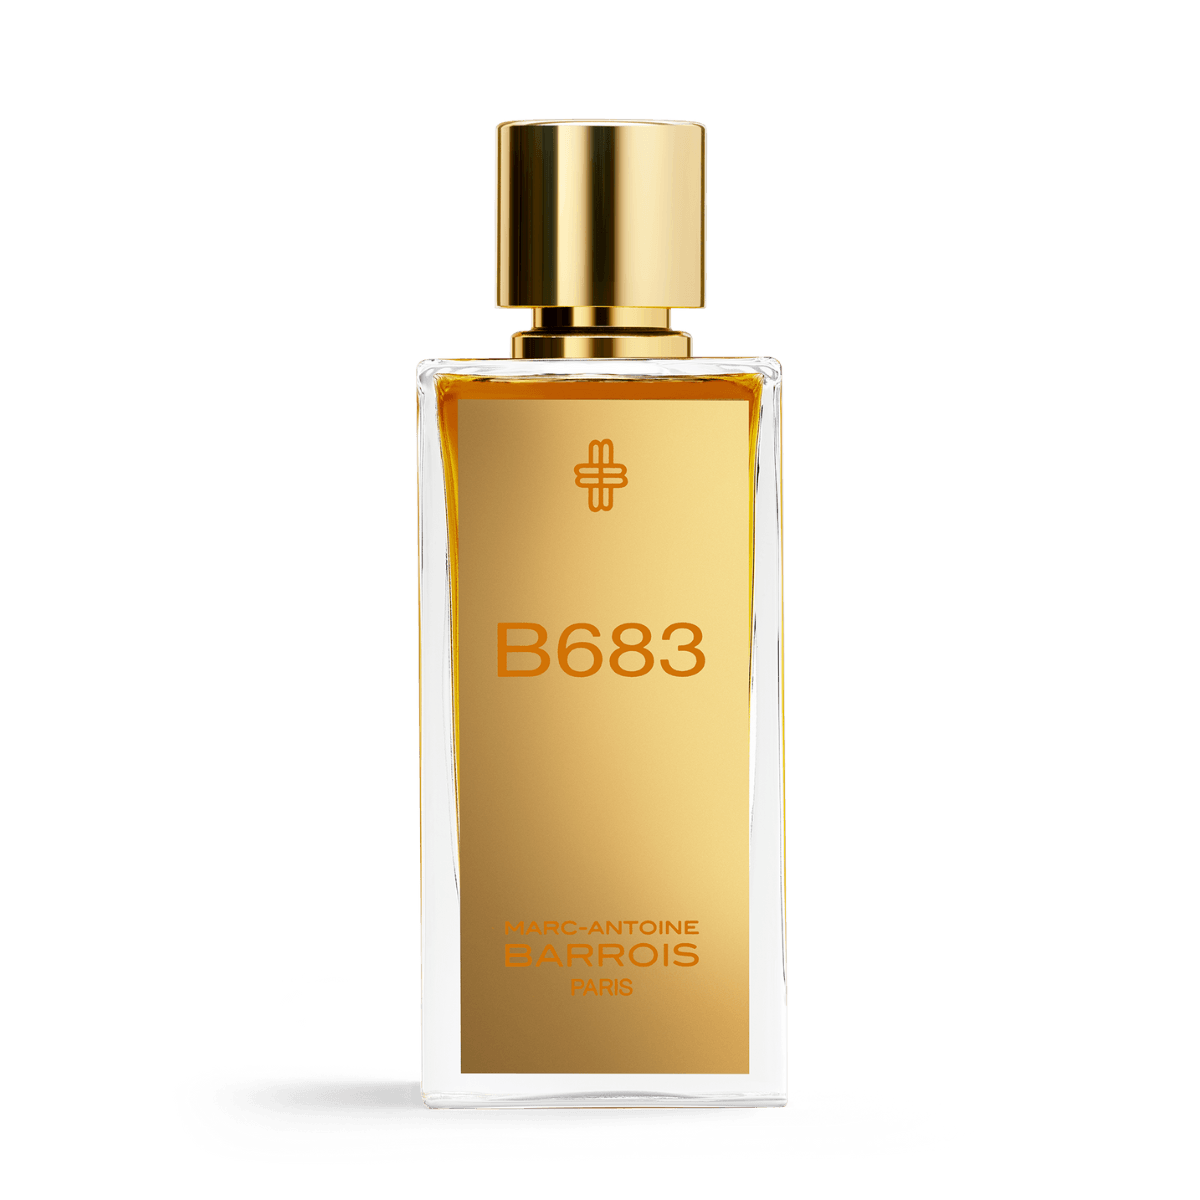 Afbeelding van B683 eau de parfum 100 ml van het merk Marc-Antoine Barrois